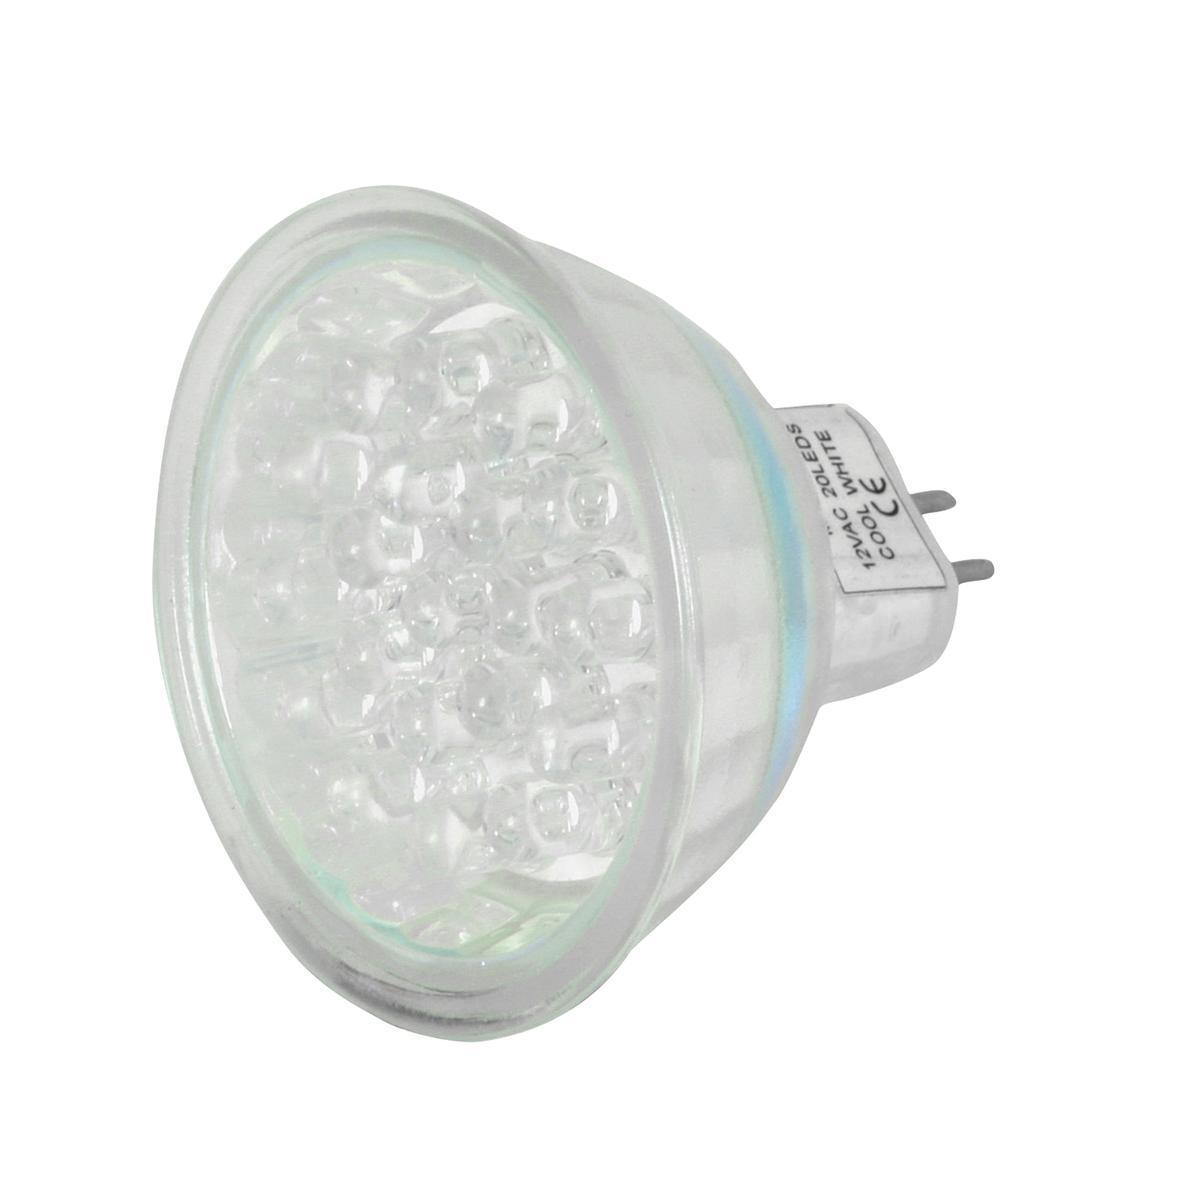 Ampoule spot 20 LED MR16 - 4.5 x 5 x 5 cm - Transparent